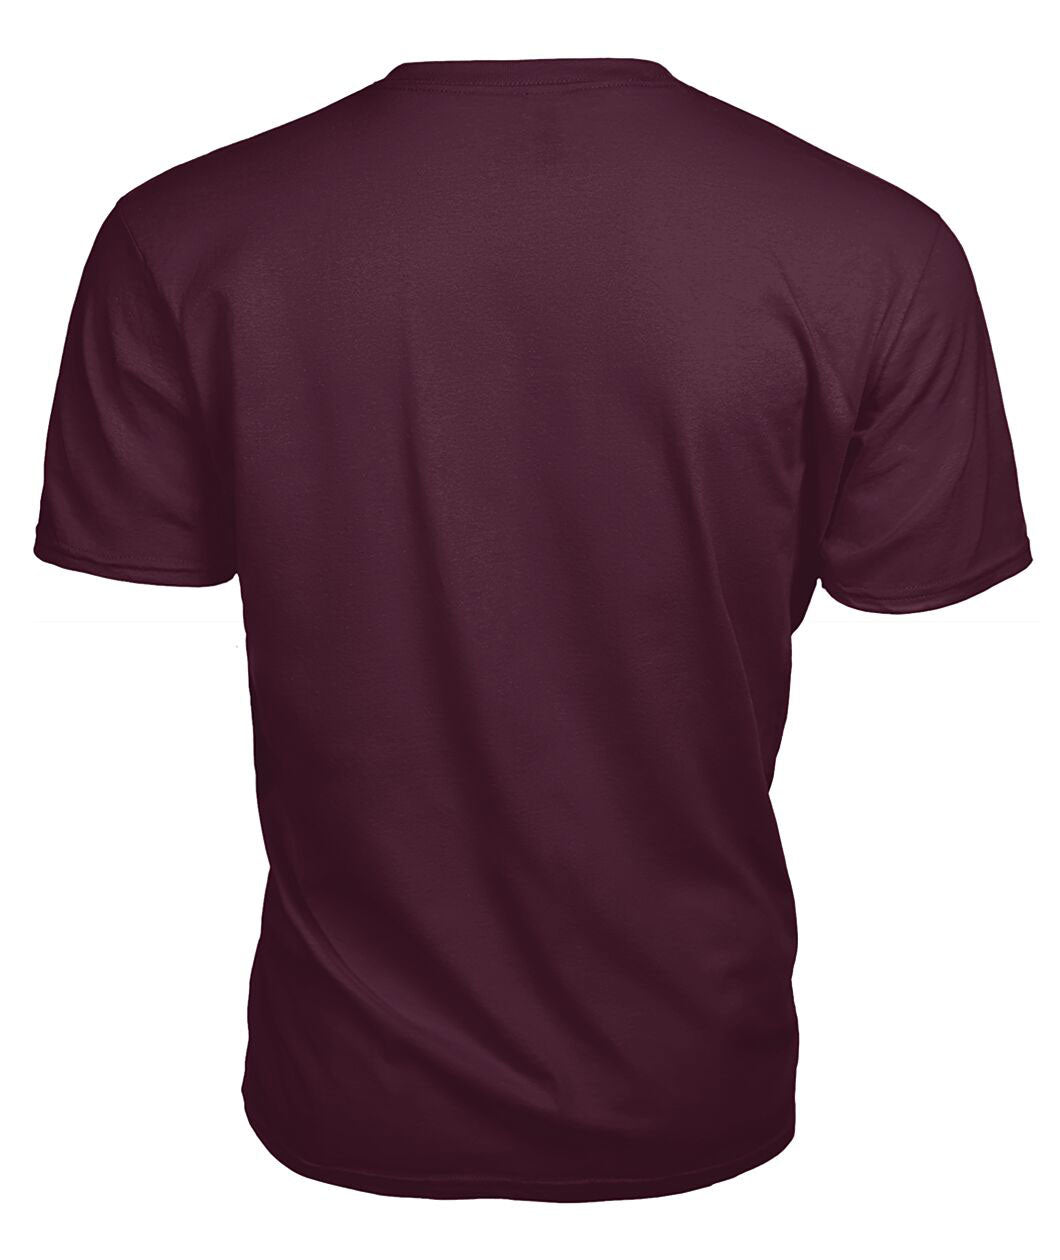 Elliot Ancient Tartan Crest 2D T-shirt - Blood Runs Through My Veins Style